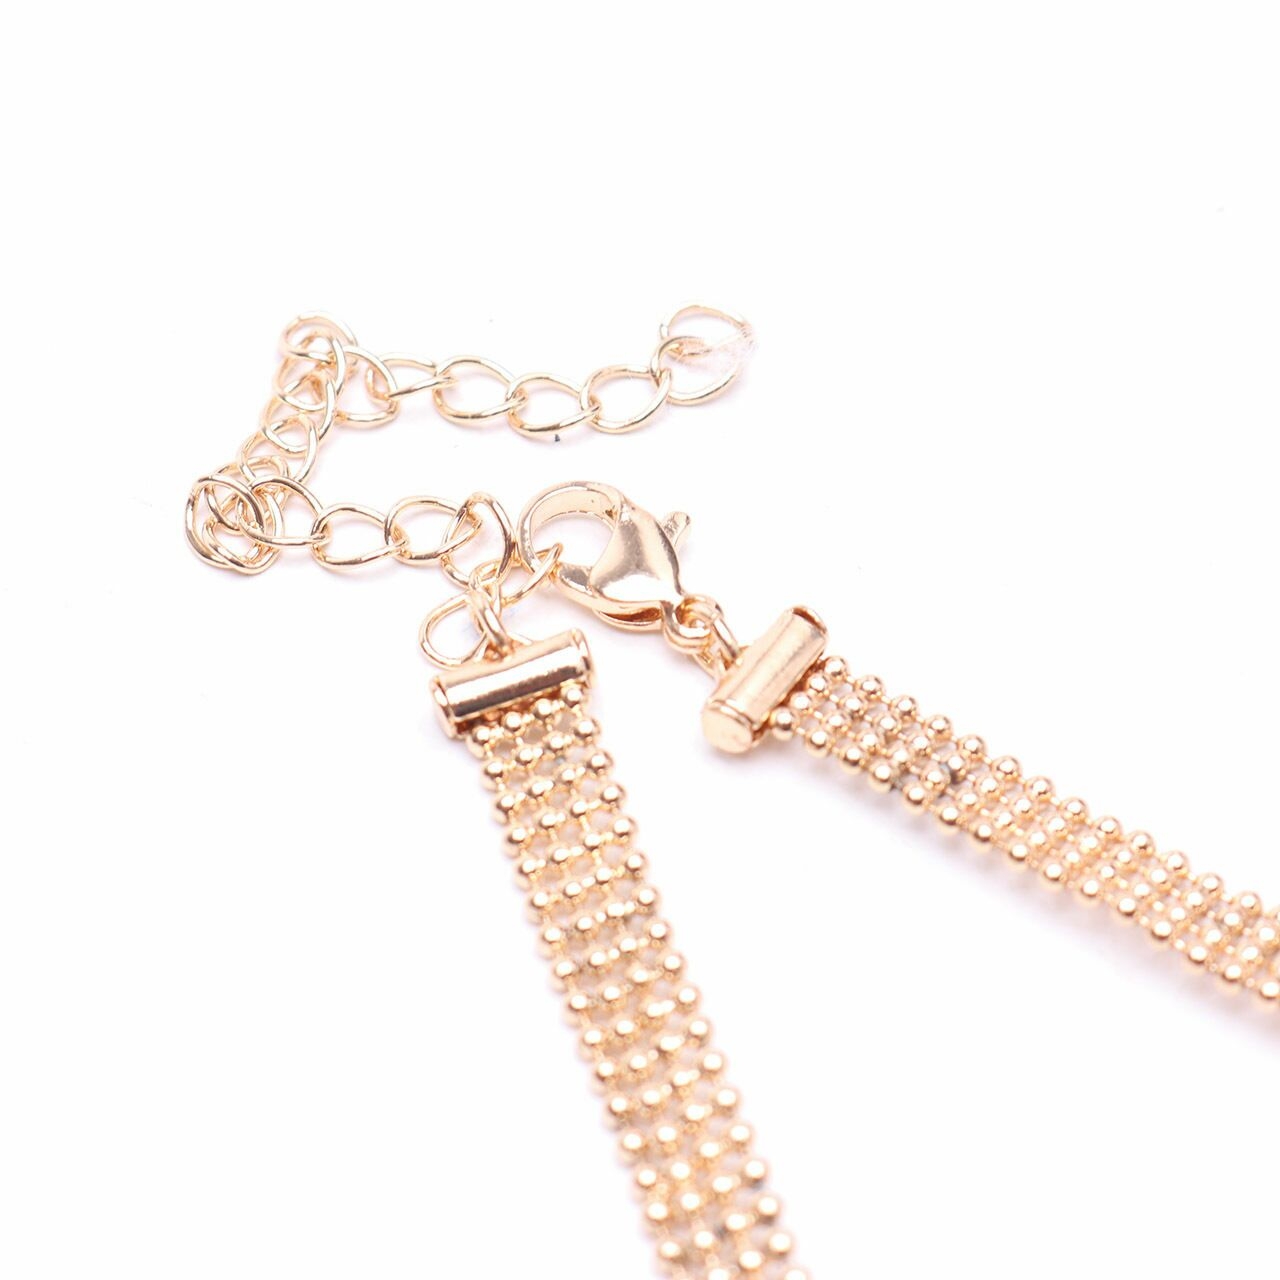 Bershka Gold Choker Necklace Jewelry